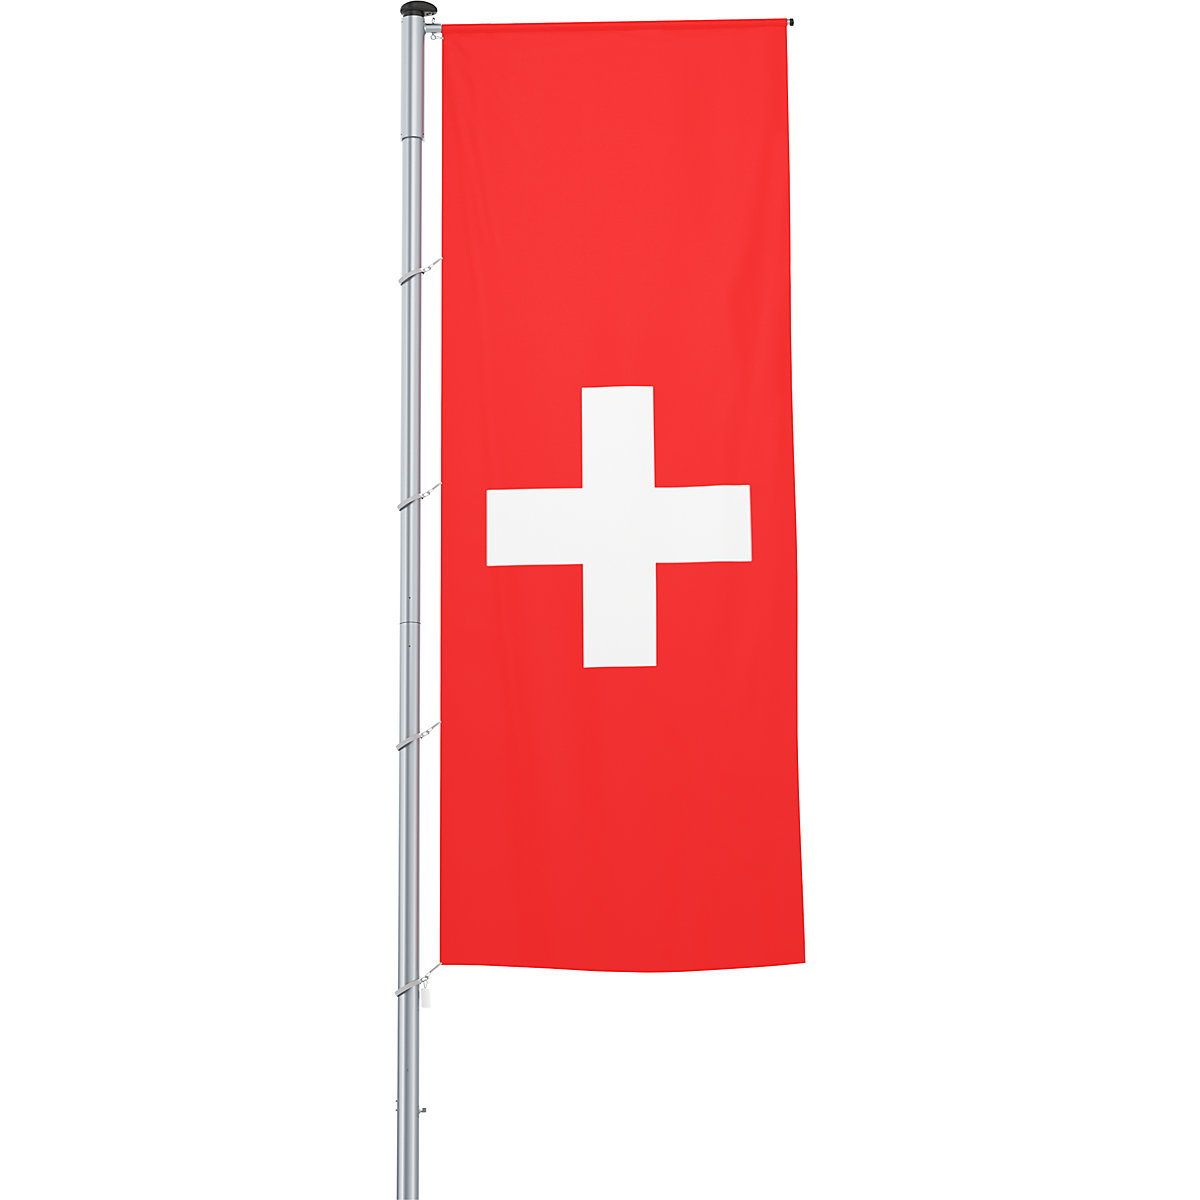 Vlajka na pozdĺžne upevnenie na stožiar/národná vlajka – Mannus, formát 1,2 x 3 m, Švajčiarsko-28